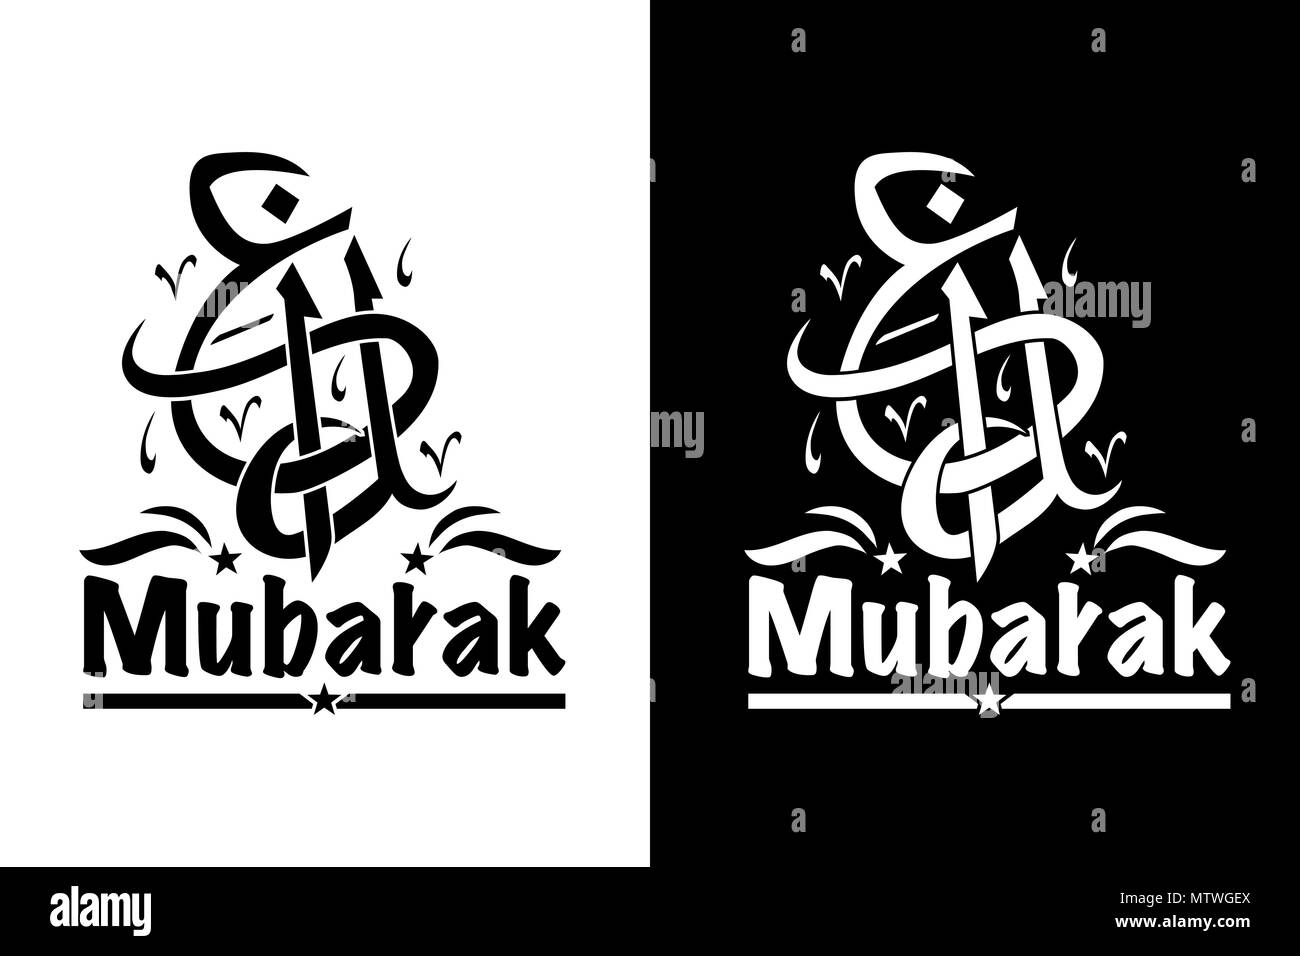 Eid mubarak Black and White Stock Photos & Images - Alamy